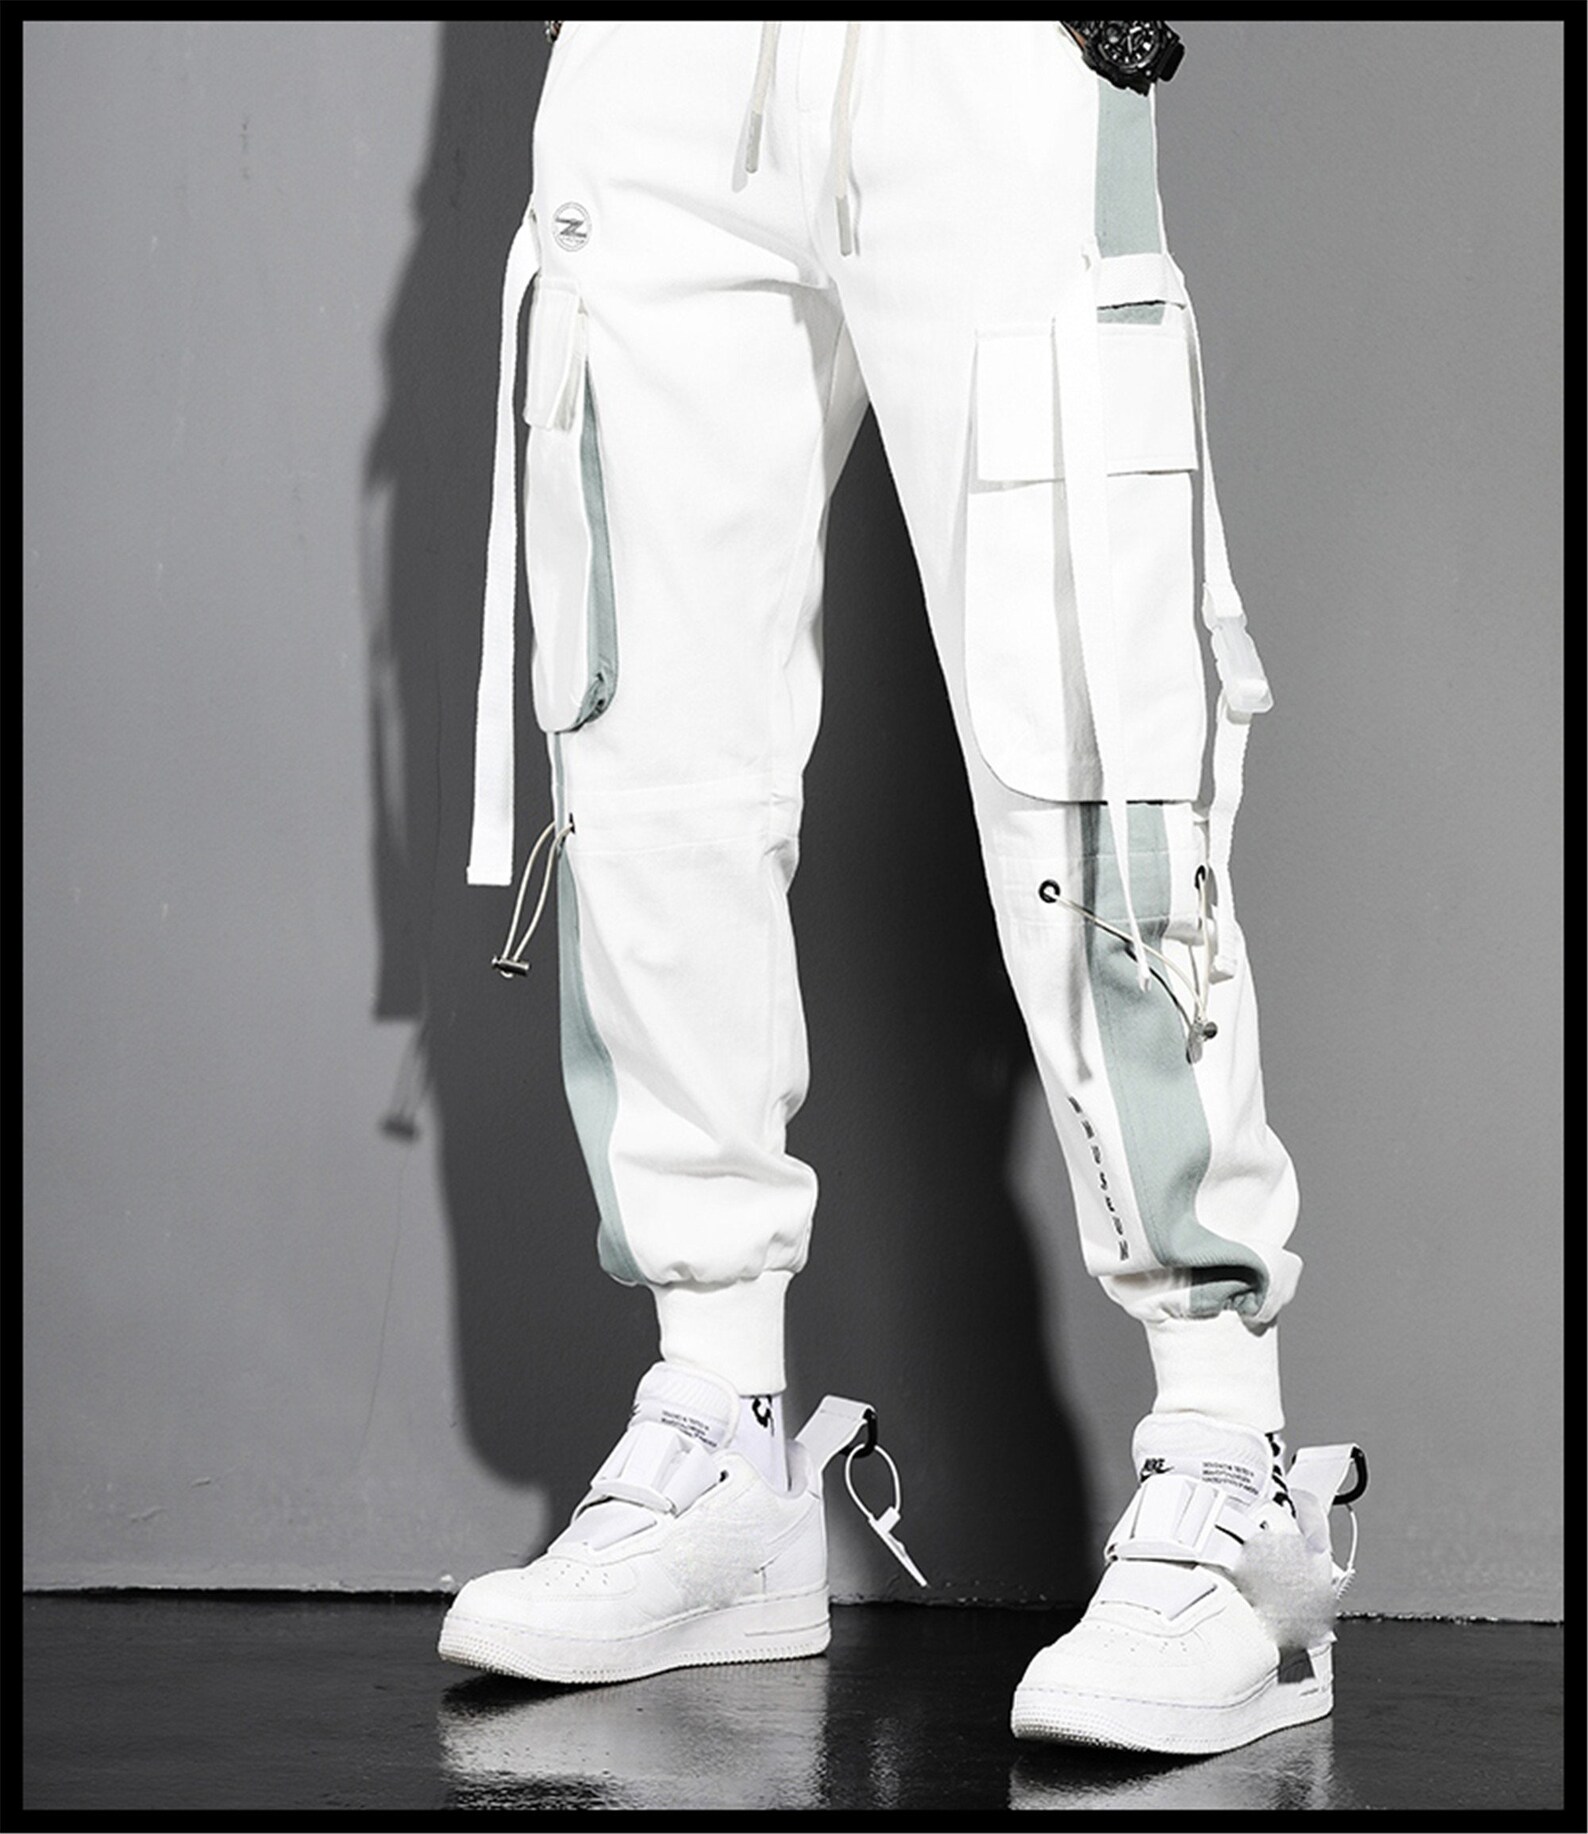 Tech-wear Pants Cyberpunk Pants Techwear White Cargo Jogger | Etsy UK